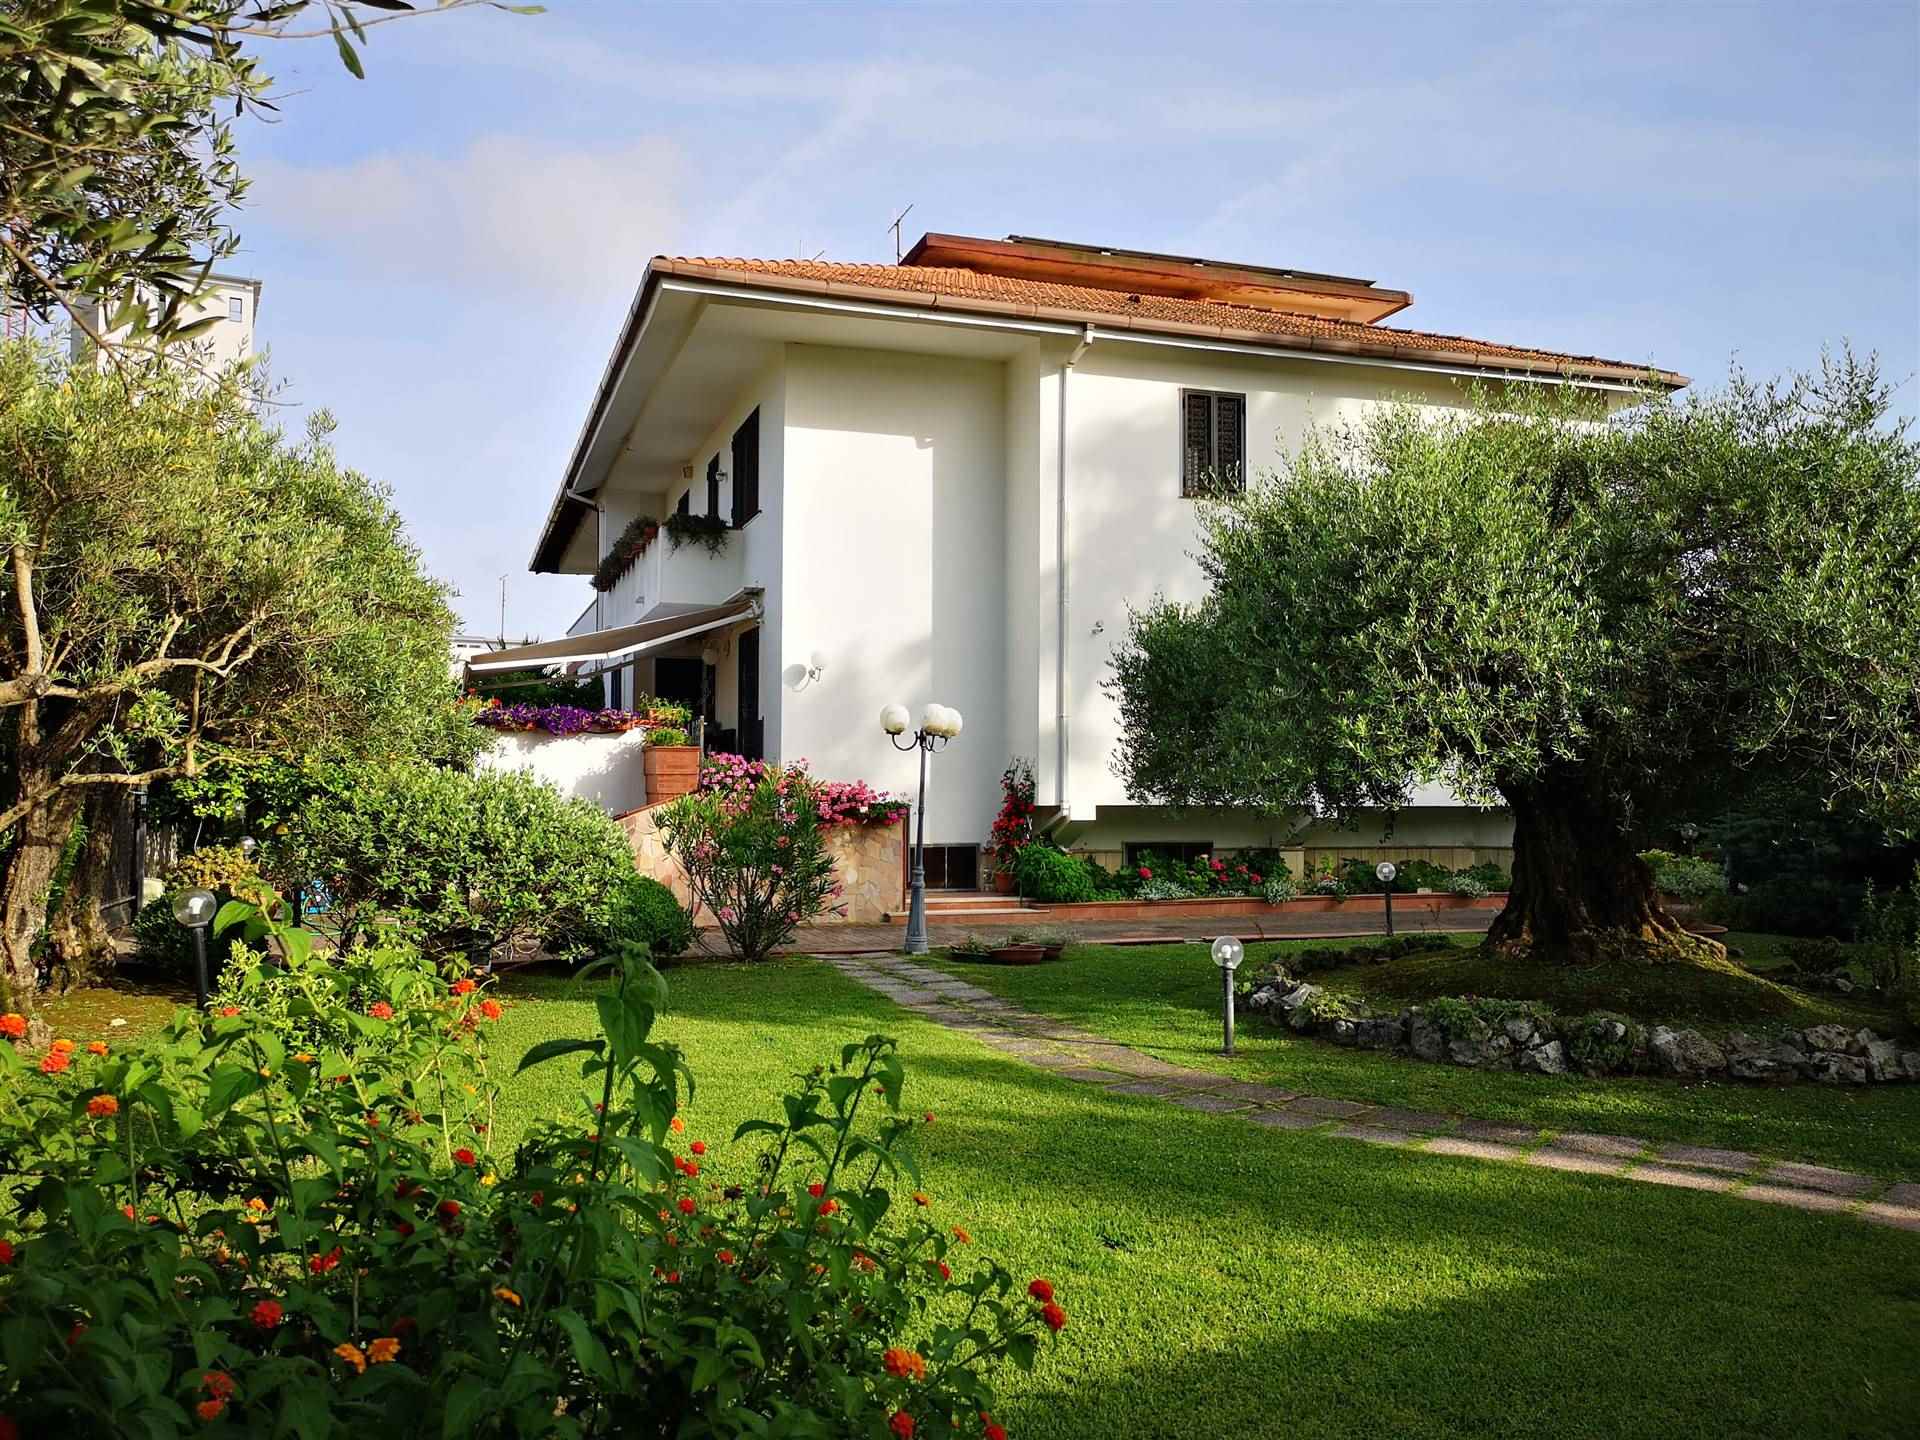 Villa in vendita a Salerno, 8 locali, zona Località: SAN LEONARDO / ARECHI / MIGLIARO, prezzo € 920.000 | PortaleAgenzieImmobiliari.it